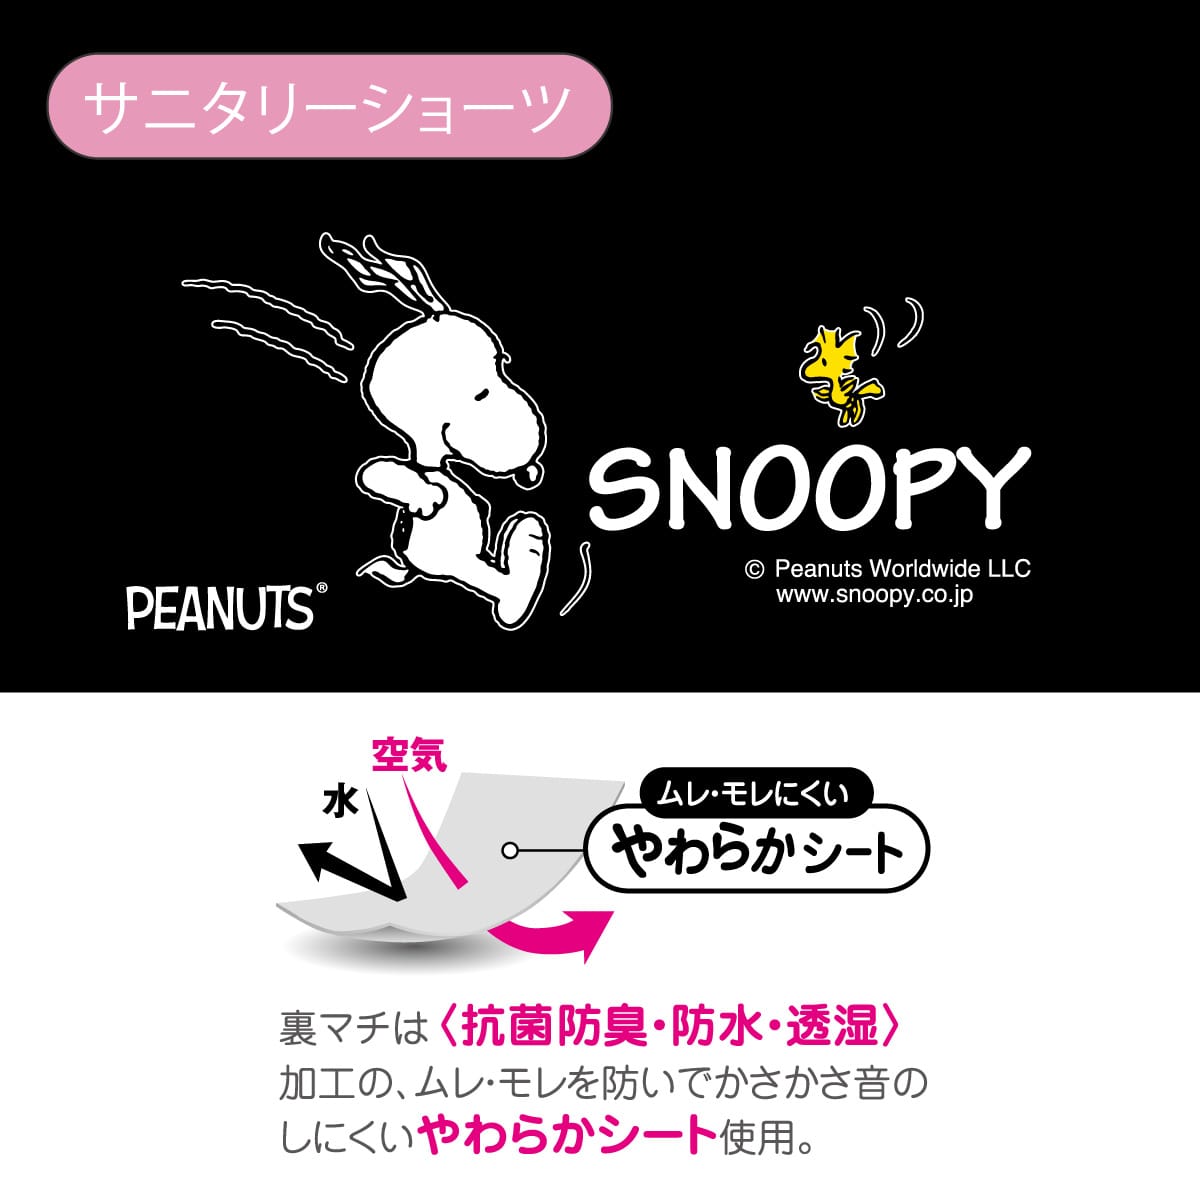 【ジュニア】PEANUTS/ピーナッツ サニタリーショーツ ナイト用 超ロングシート スヌーピー